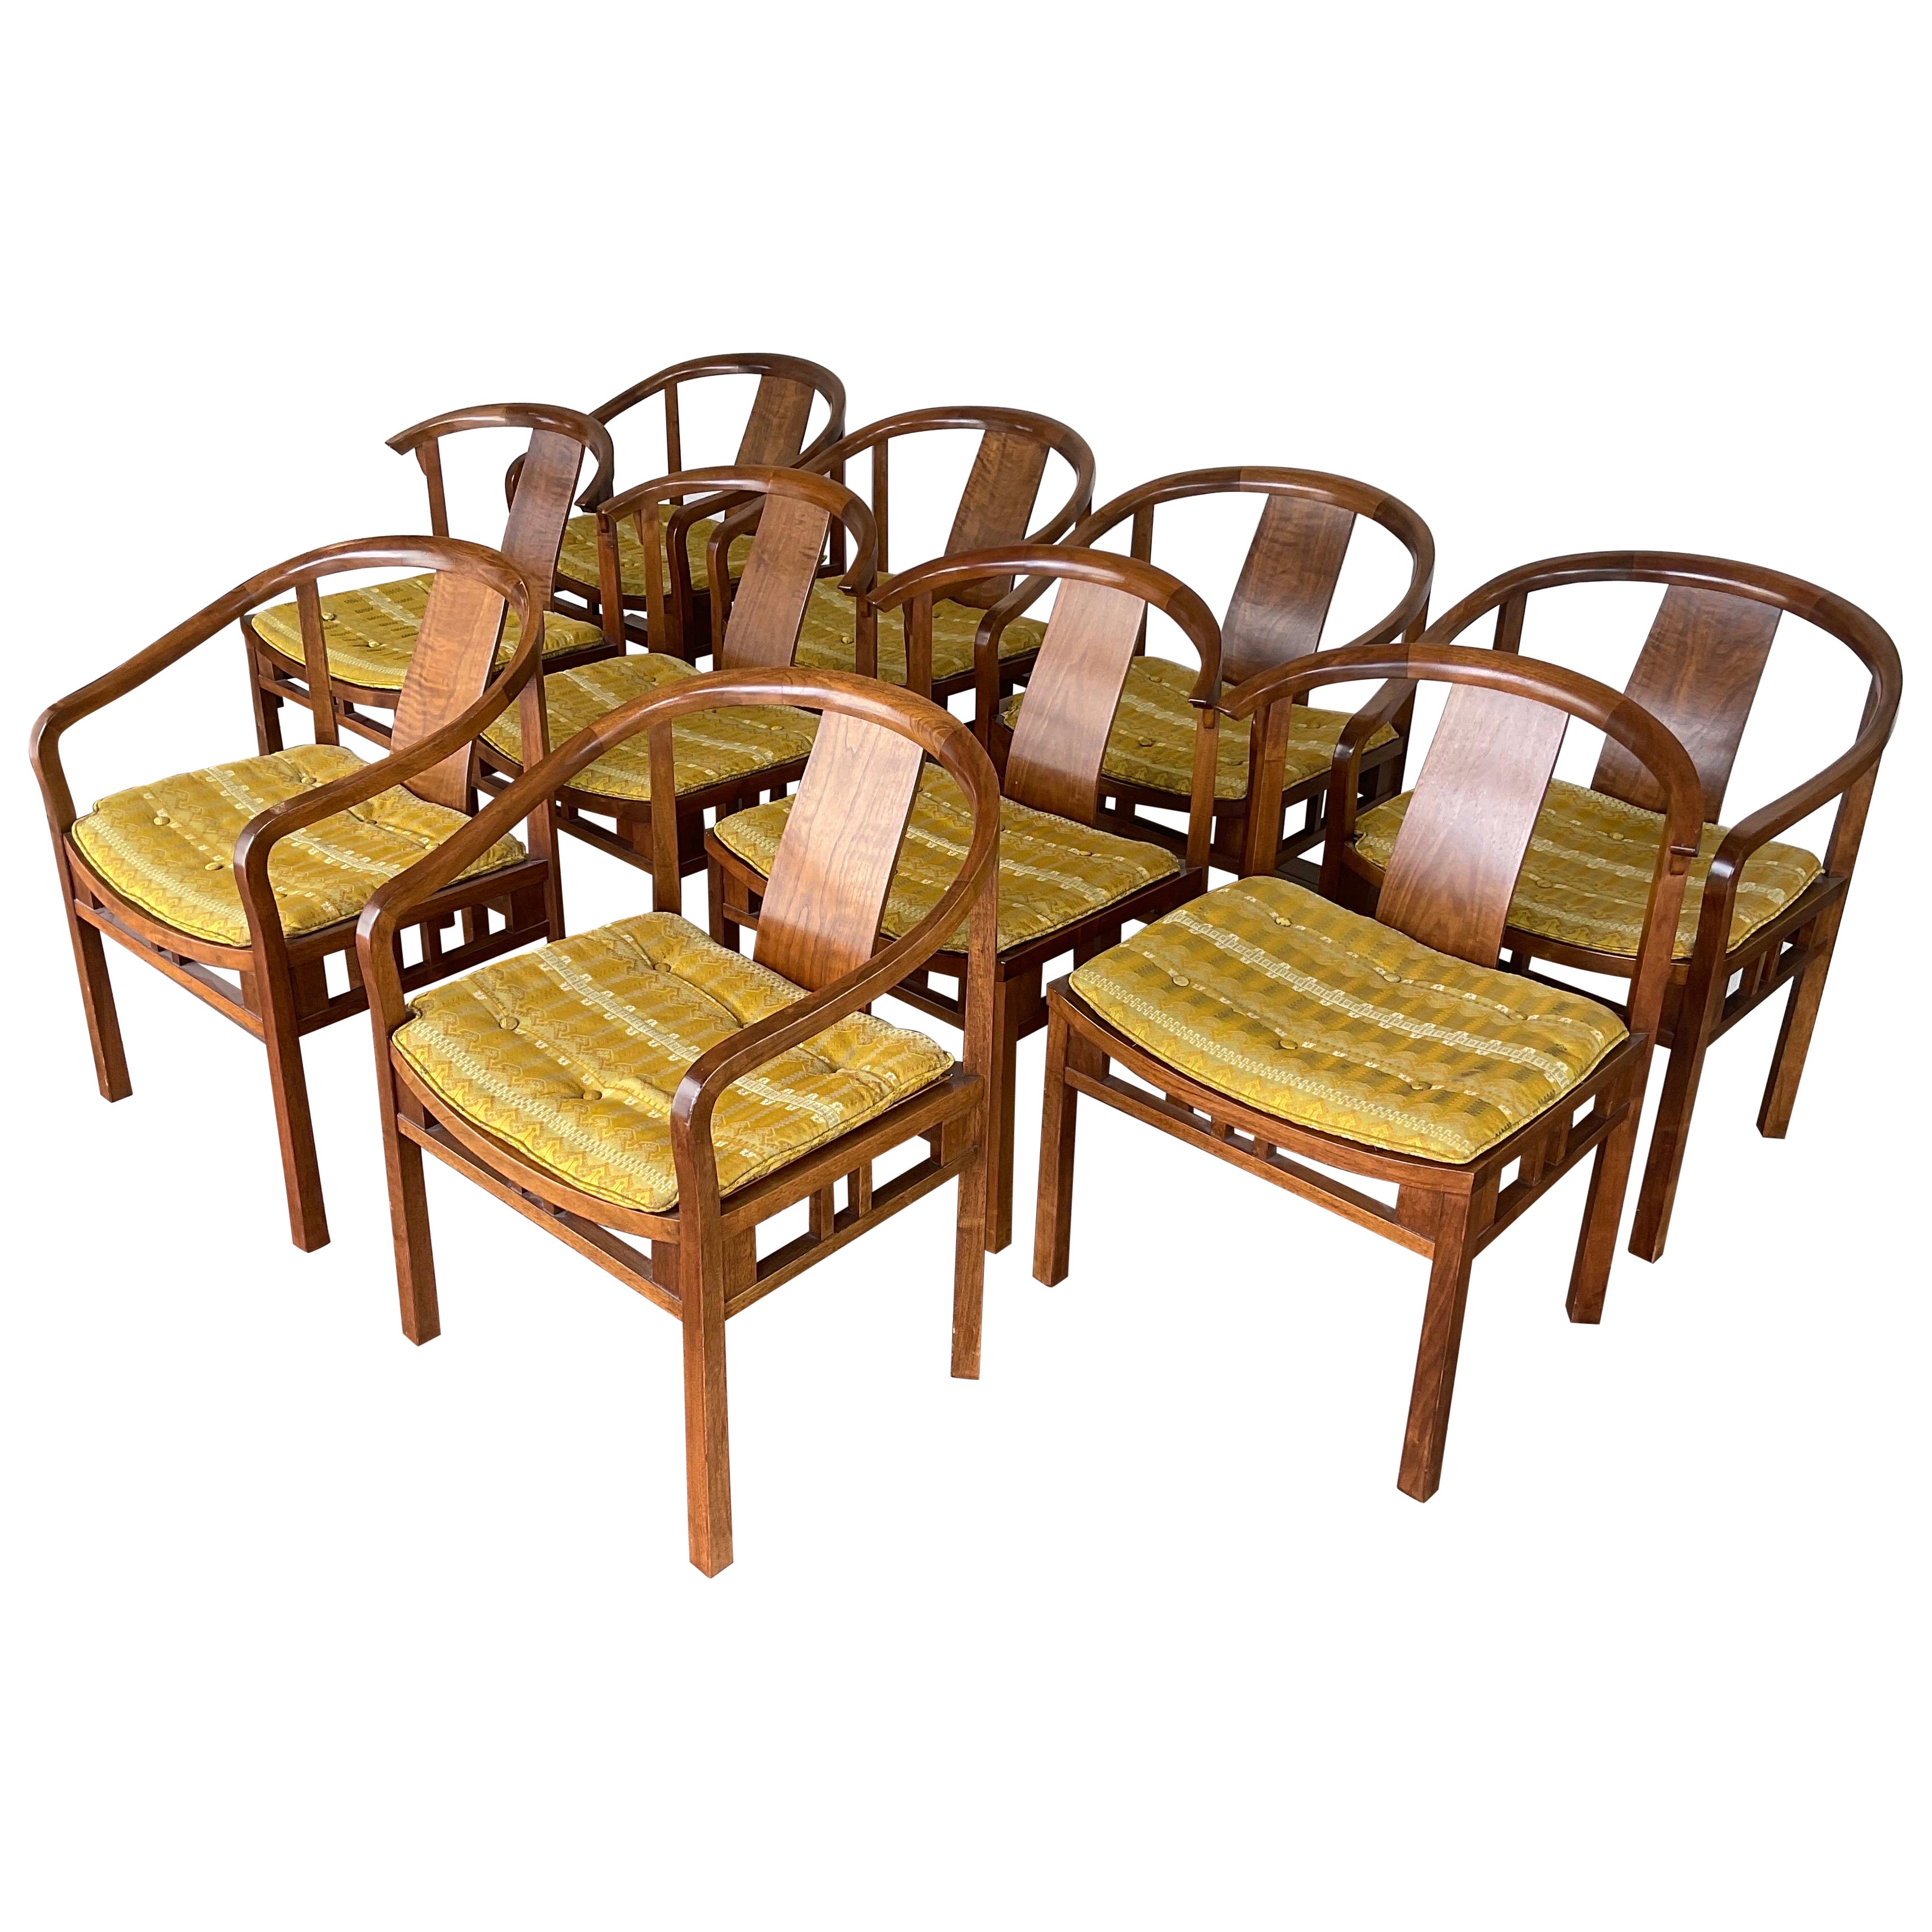 Chaises de salle à manger en noyer des années 1950 par Michael Taylor pour Baker Furniture - Lot de 10